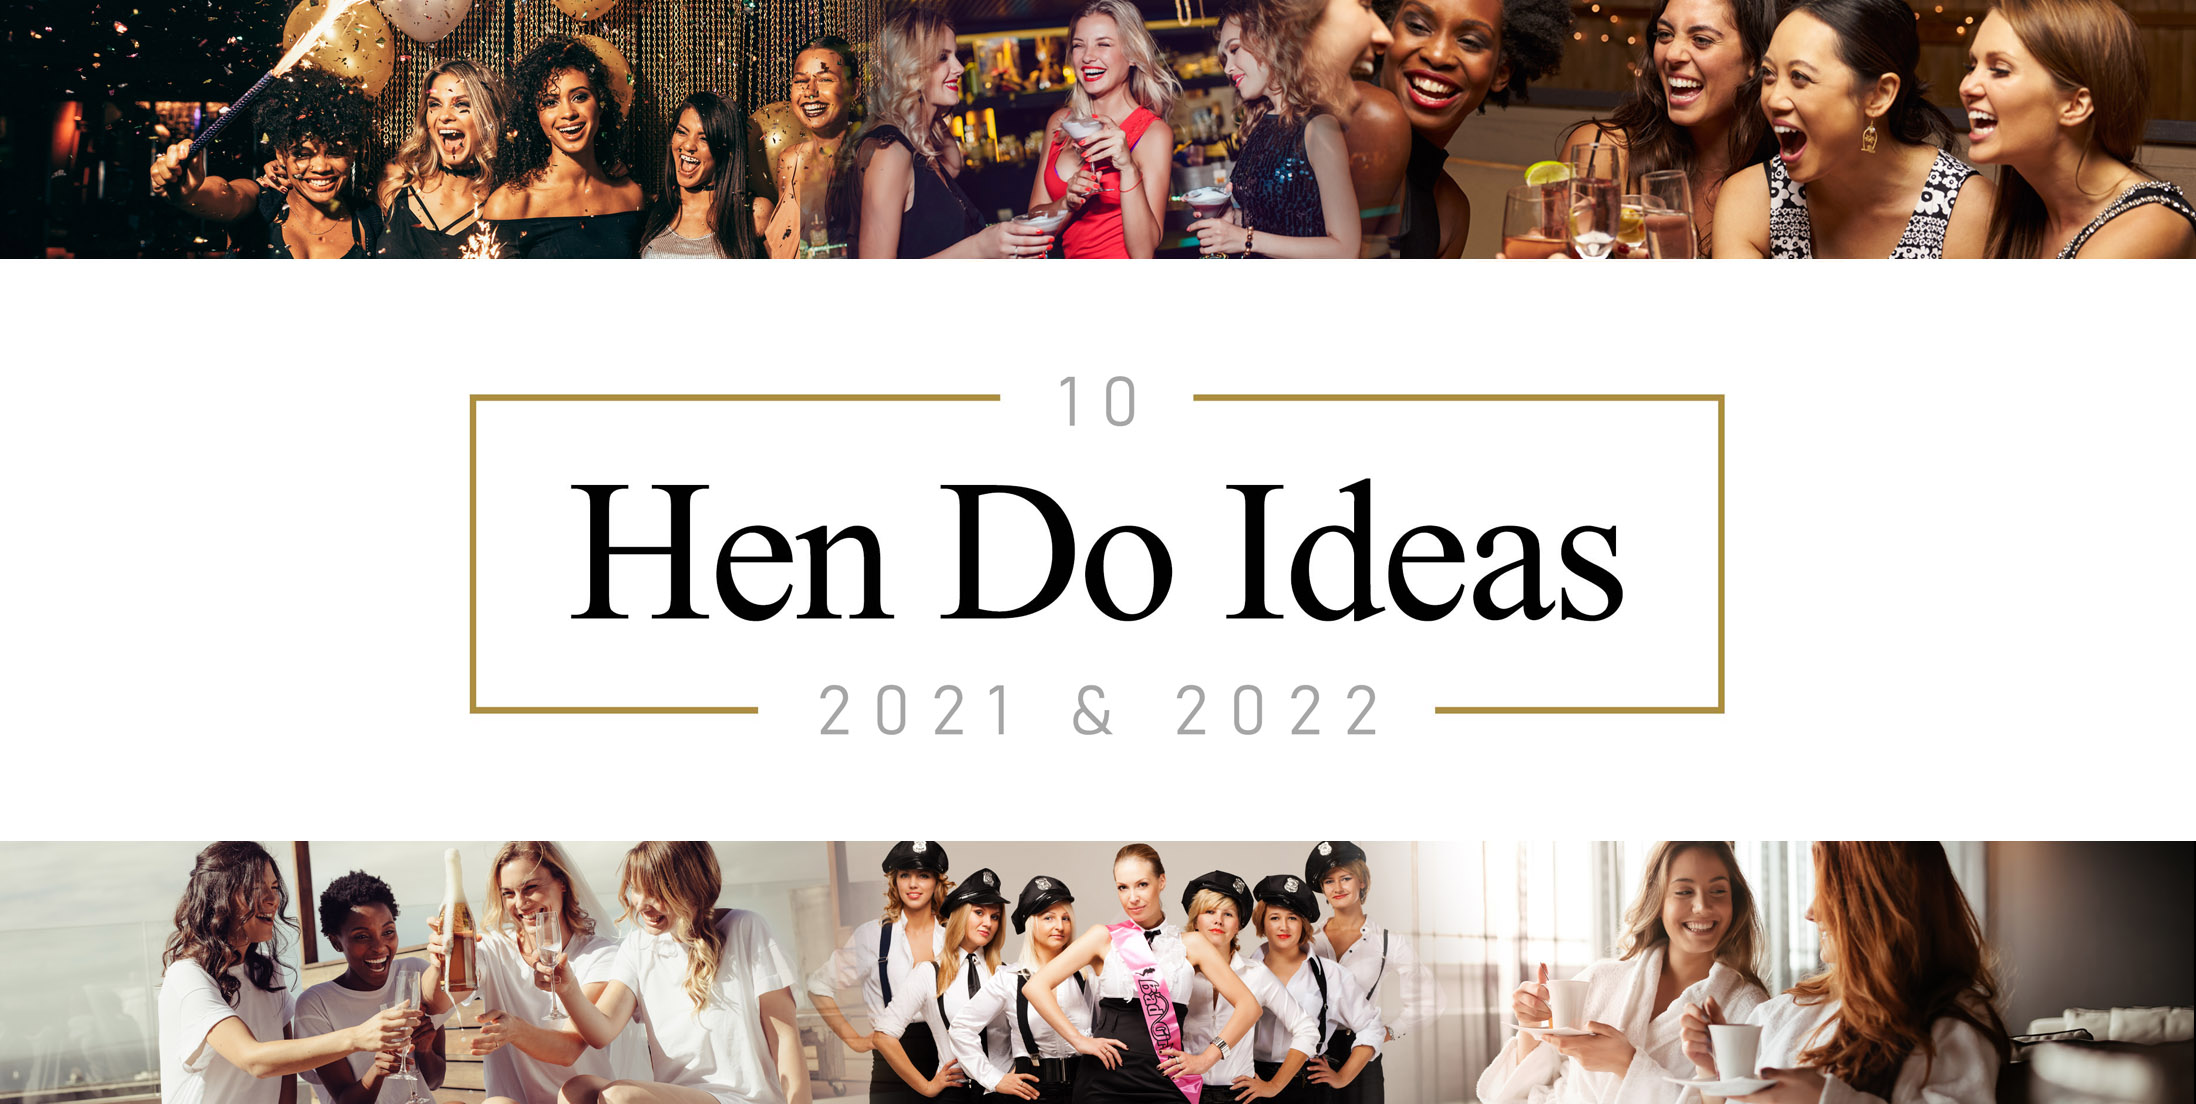 10 Fun Hen Do Ideas for 2021 & 2022